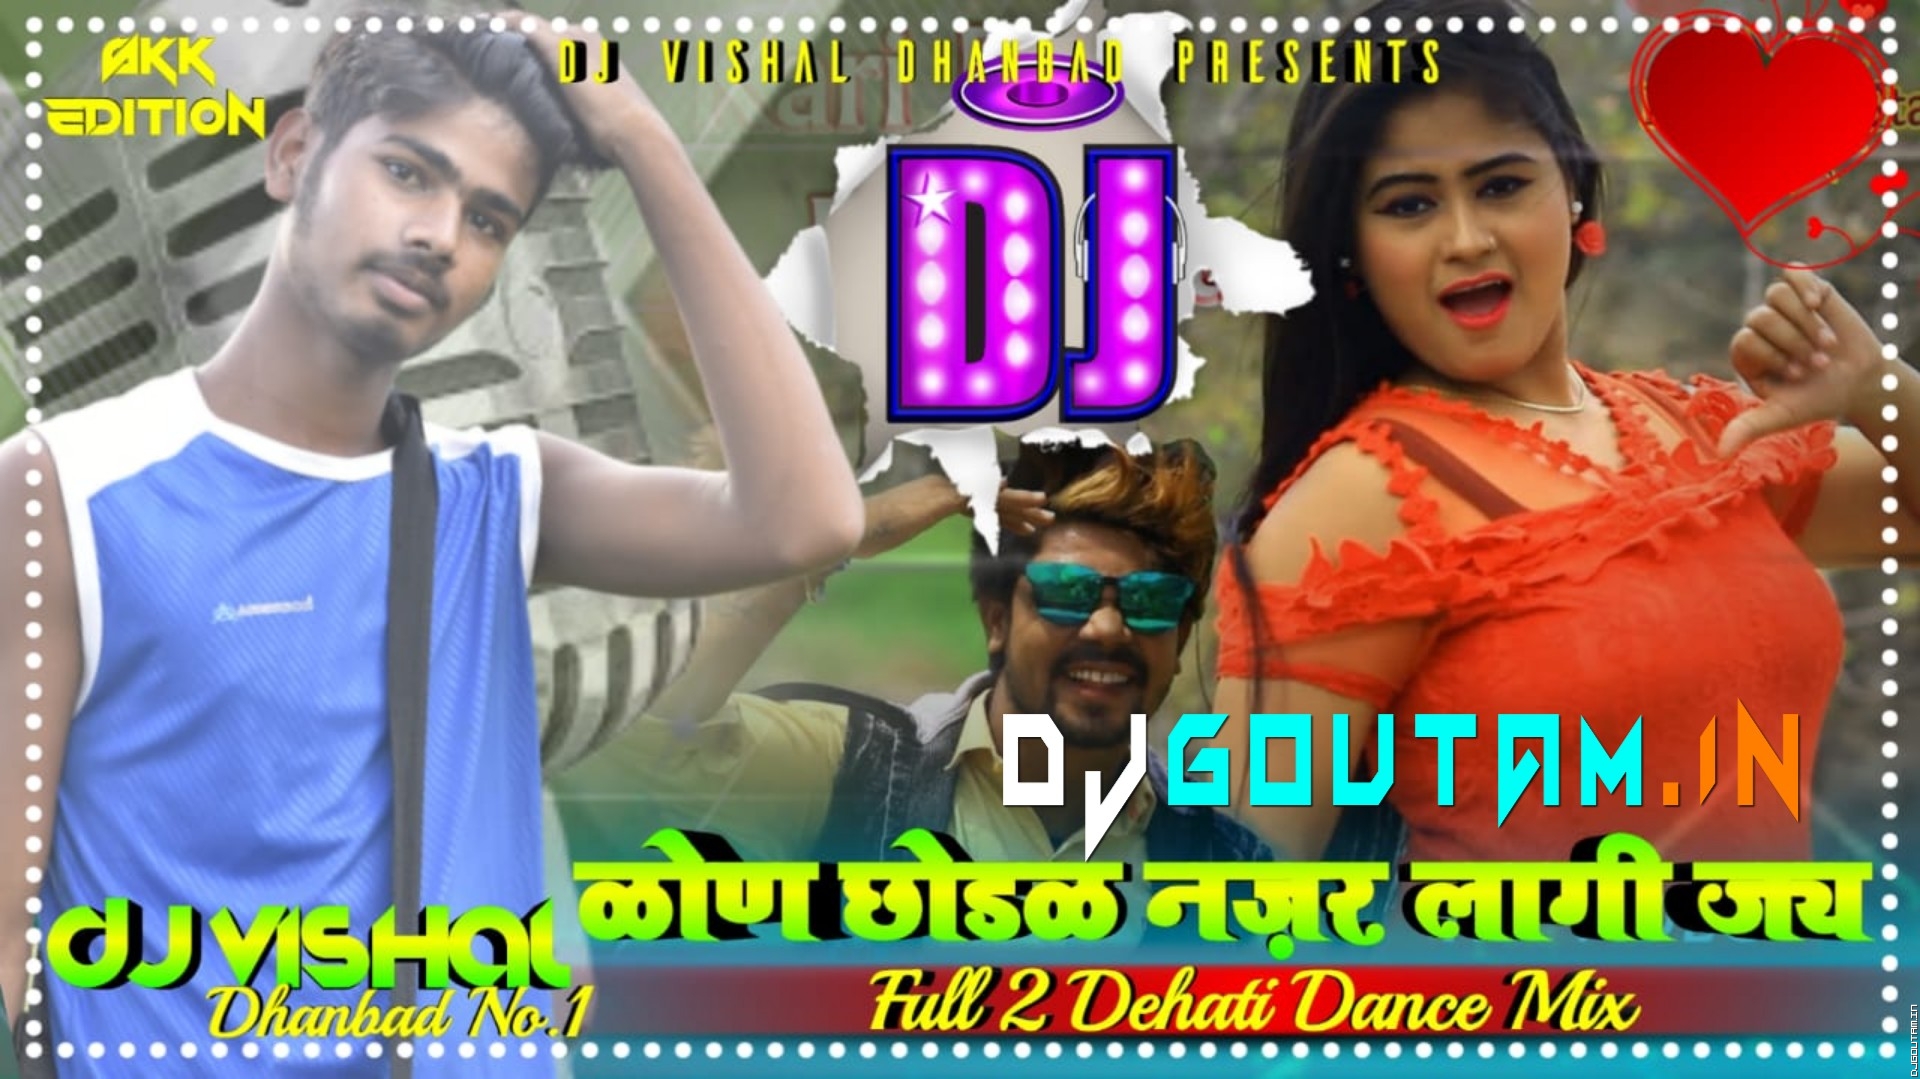 Kon_Chhodak_Nazar_Lagi_Jay_New Khortha Hit Sang_{Full 2 Dehati Dance}Mix DjVishal Dhanbad .mp3